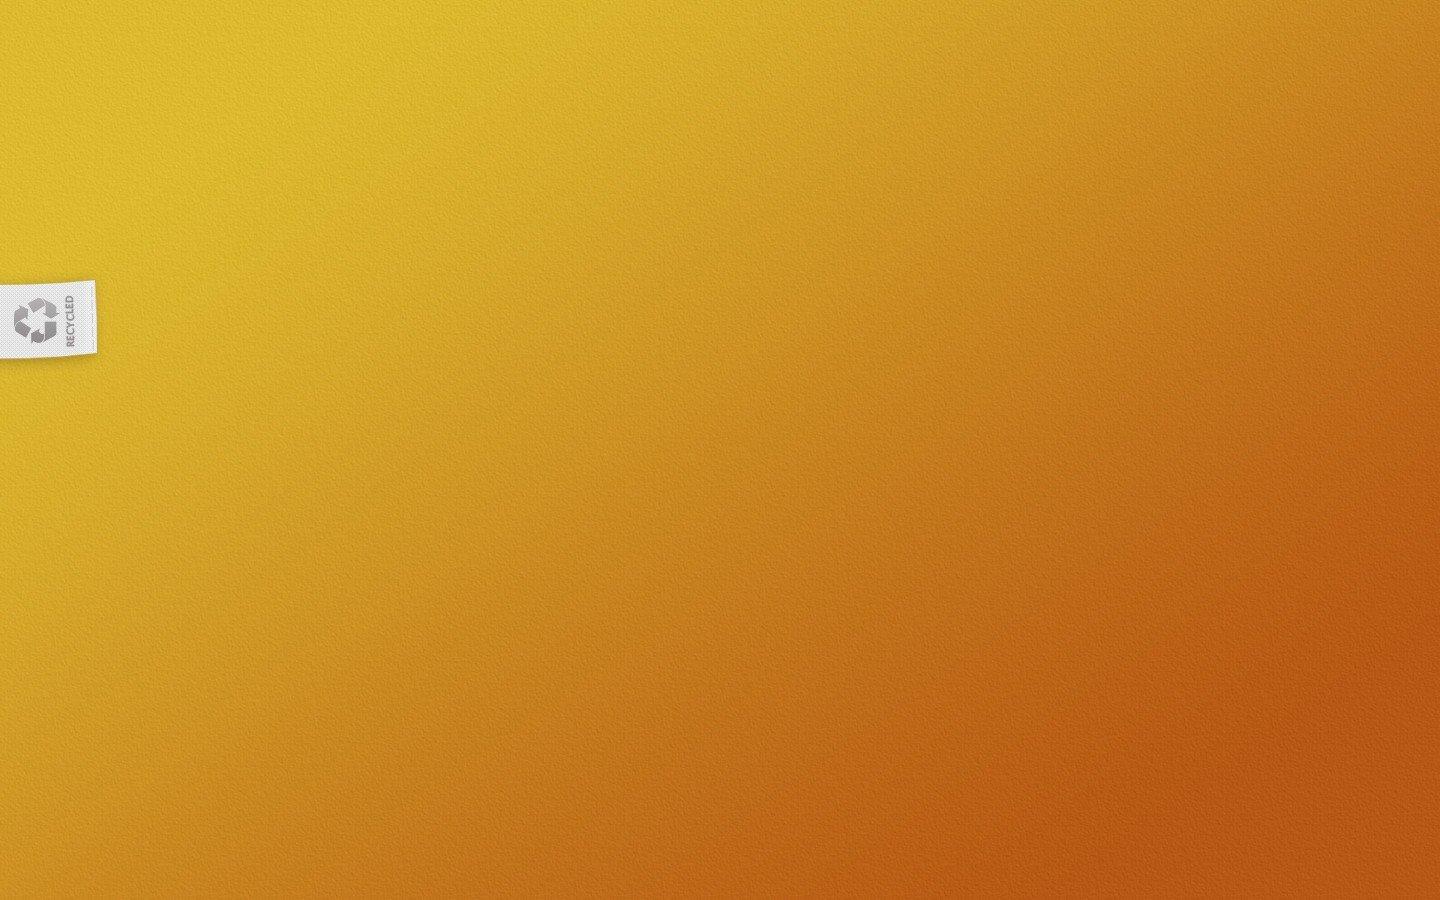 Với Hình nền dệt màu cam và vàng, tìm kiếm khoảng trống trên màn hình điện thoại của bạn không còn là một trở ngại nữa. Bộ sưu tập đầy màu sắc và nghệ thuật này sẽ đem đến cho bạn sự tươi mới và phong cách đầy mê hoặc. Tải ngay và chiêm ngưỡng những tác phẩm nghệ thuật độc đáo!